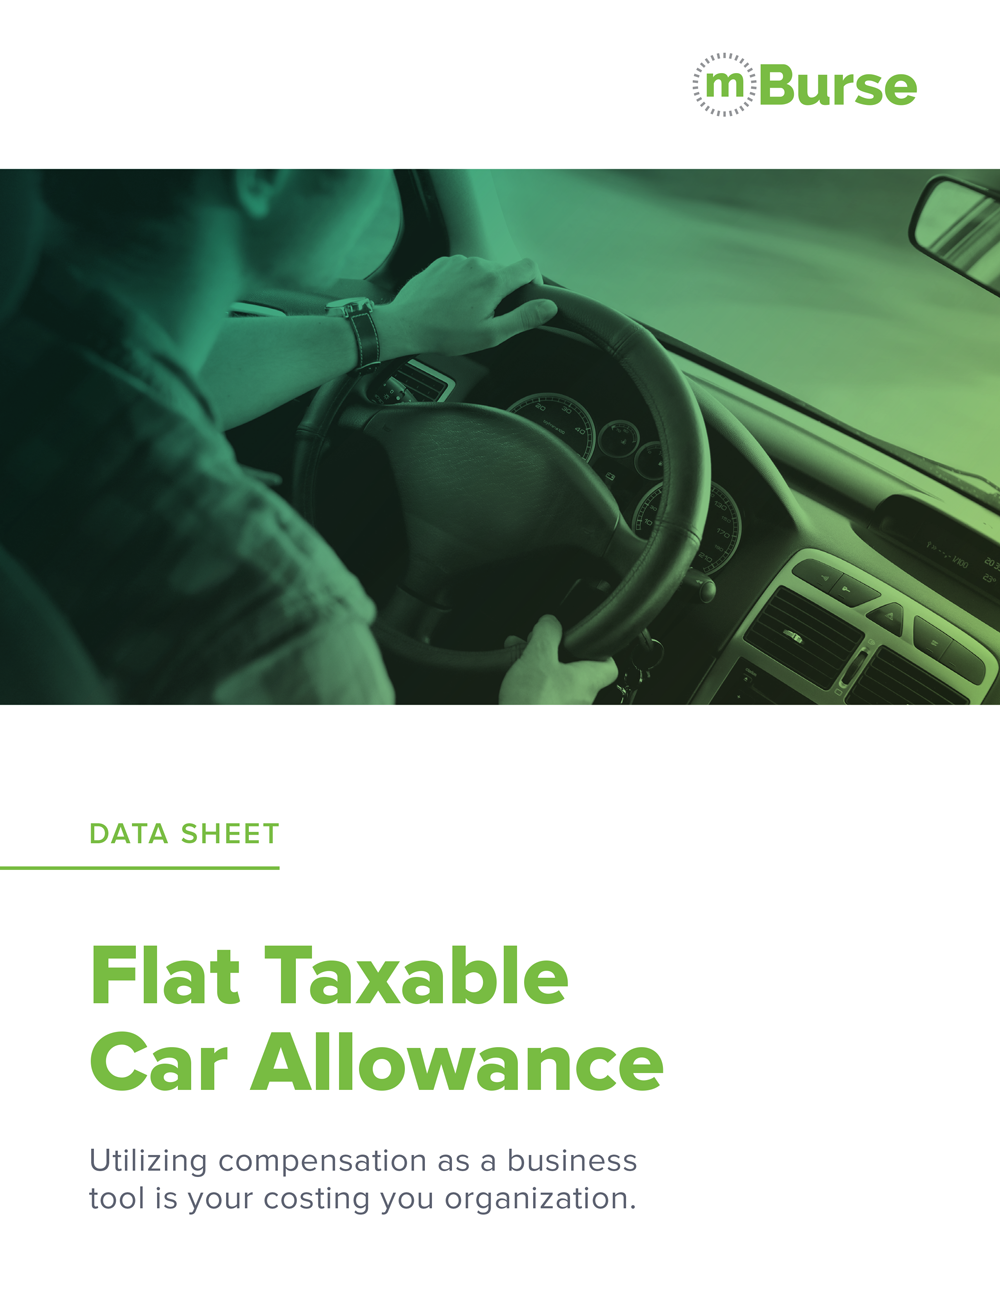 mBurse Car Allowance data sheet